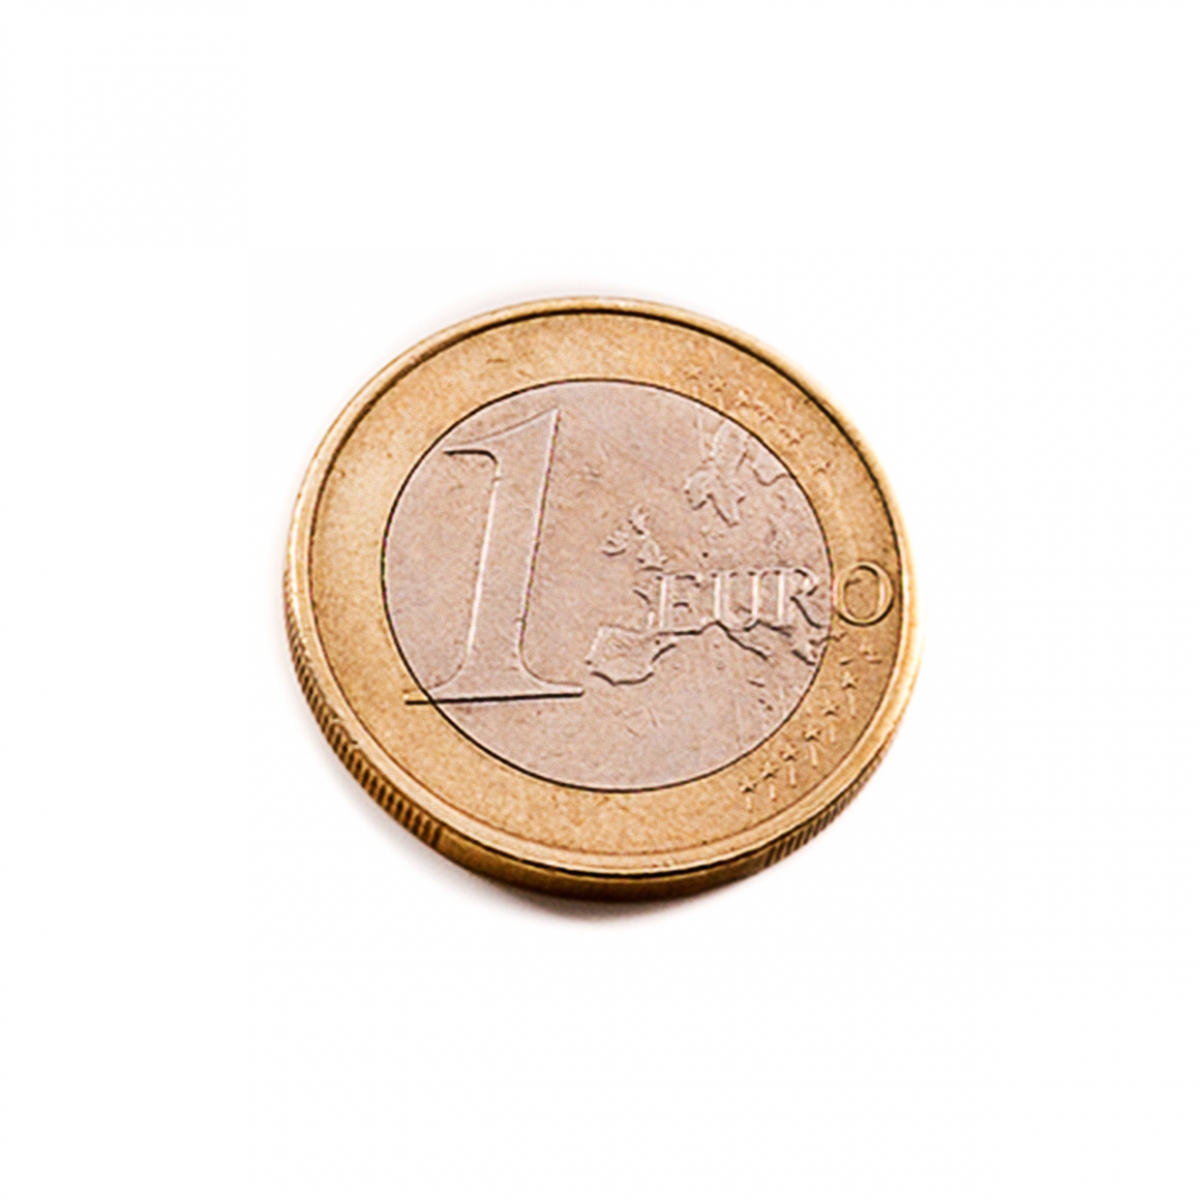 Imagen en la que se ve una moneda